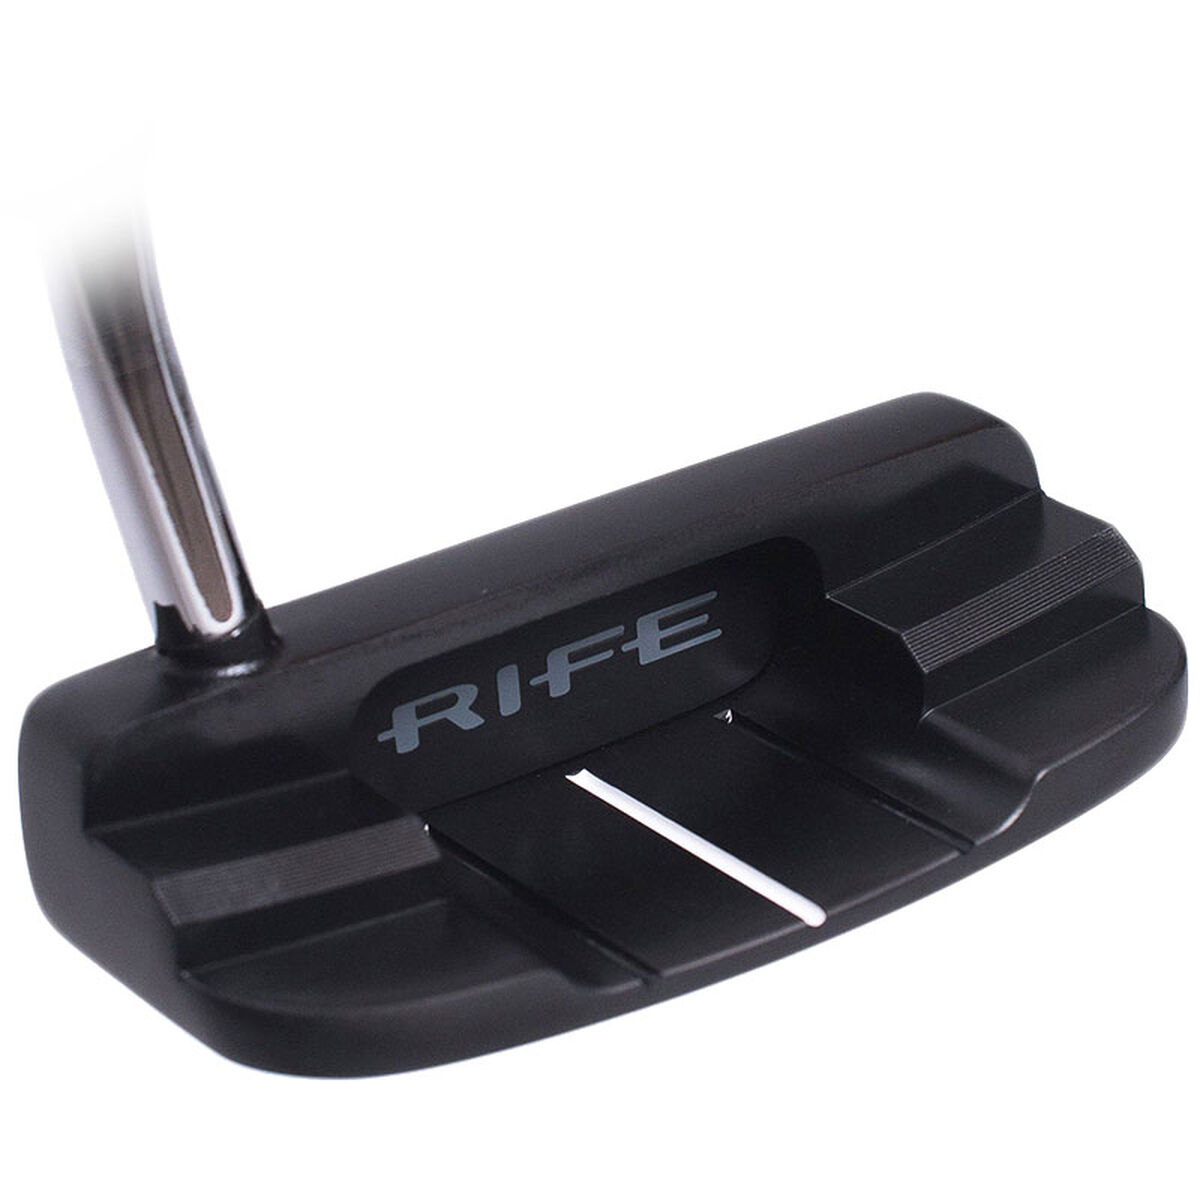 Rife Black Raider Right Hand Golf Putter, Size: 34" | American Golf von Rife